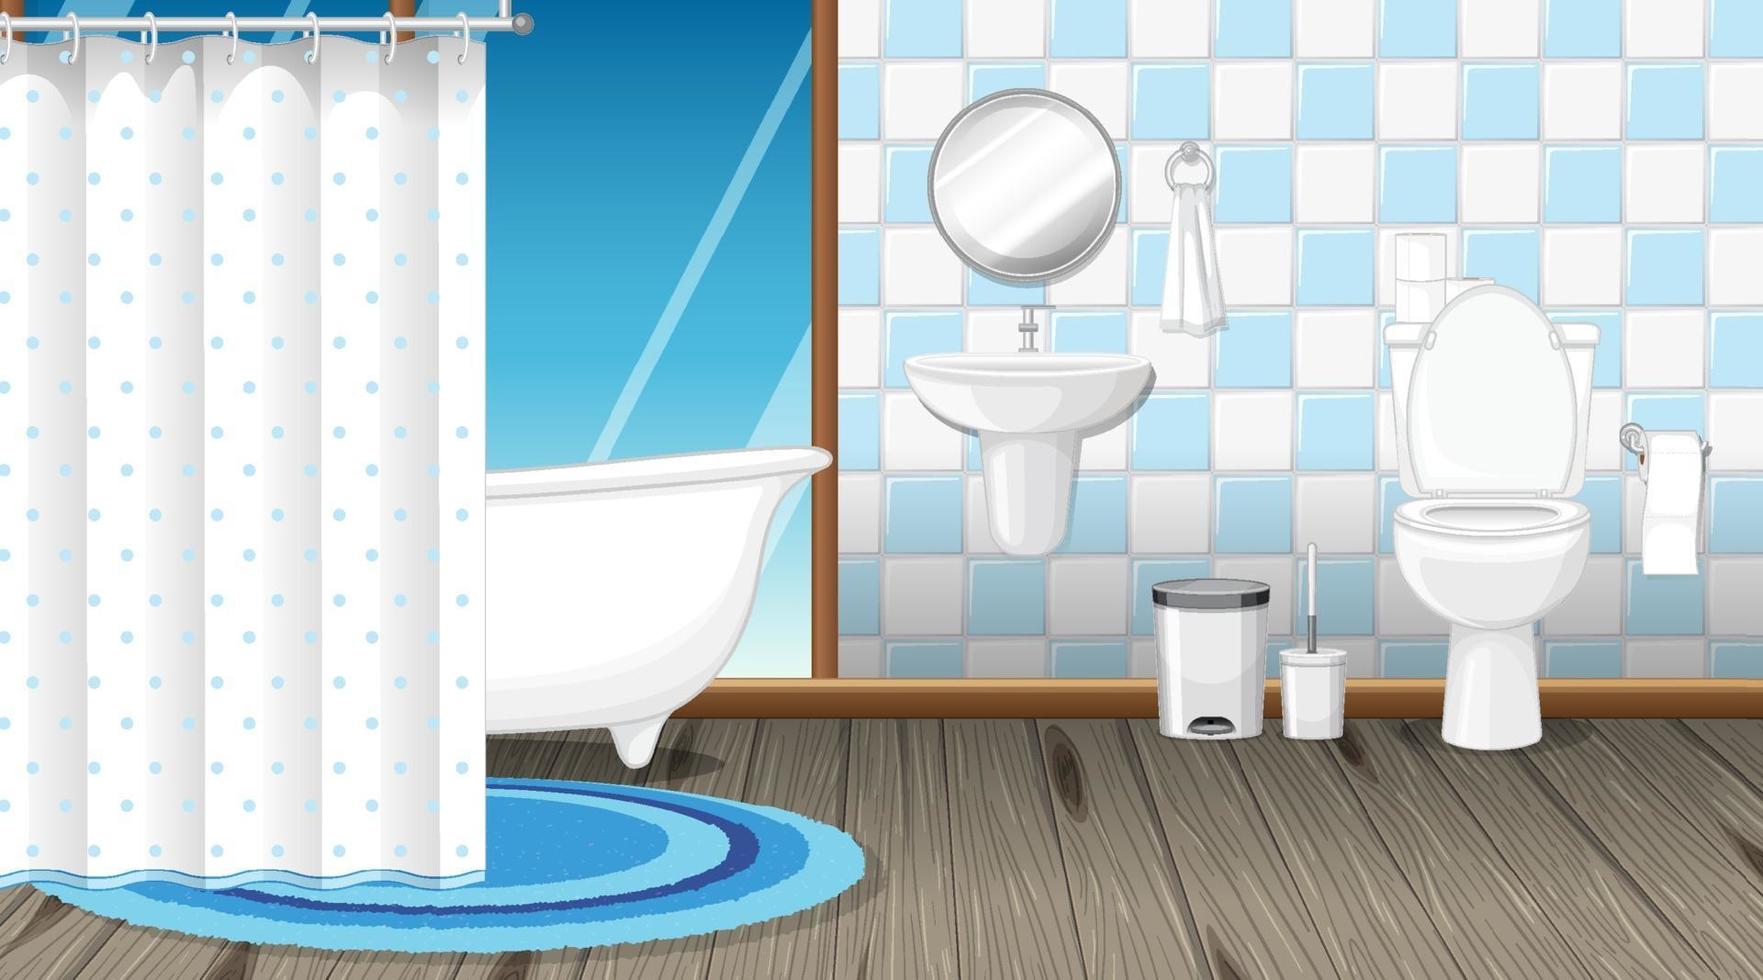 design de interiores de banheiro com mobília vetor